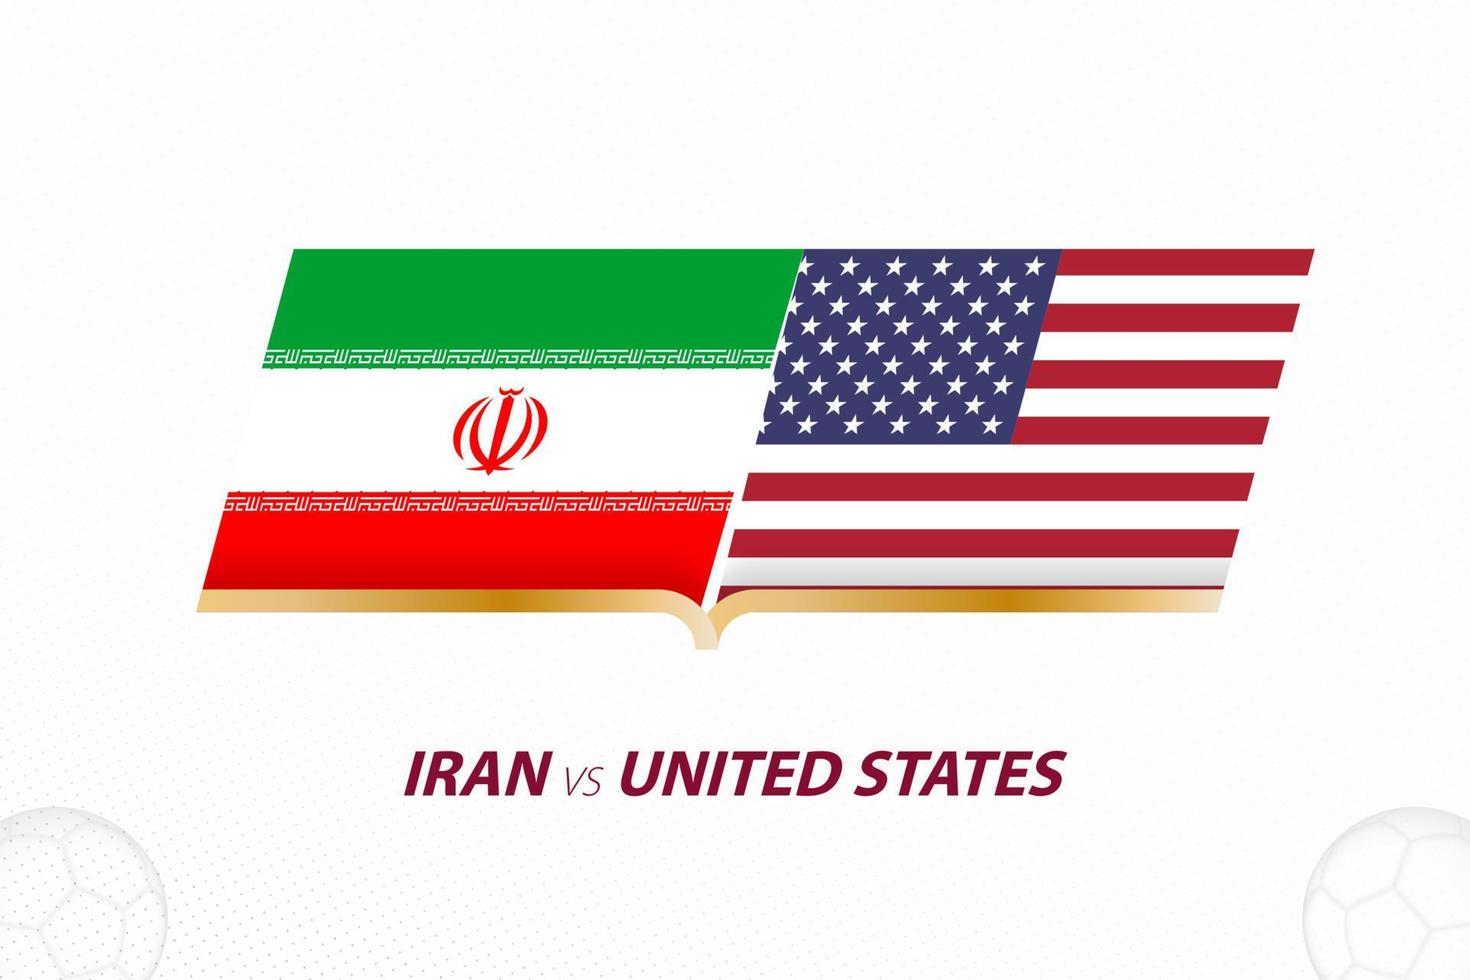 Irán vs Estados Unidos en competición de fútbol, grupo a. versus icono en el fondo del fútbol. vector